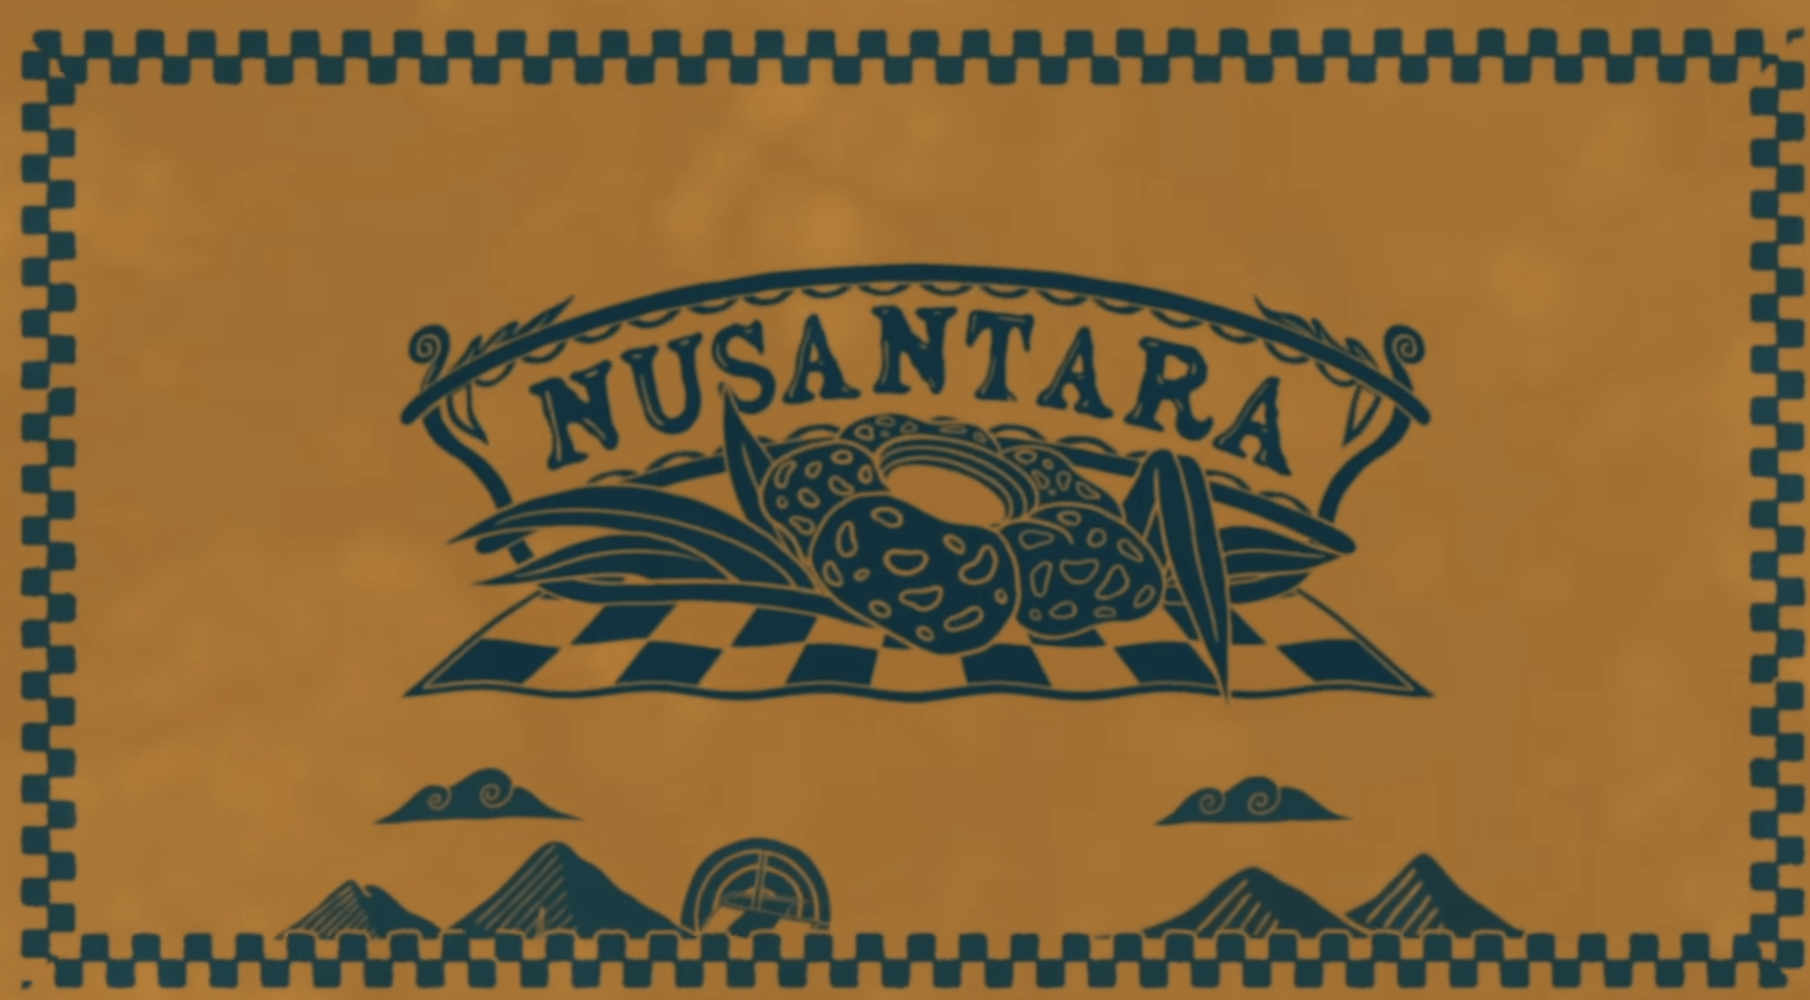 Vans - Nusantara cover